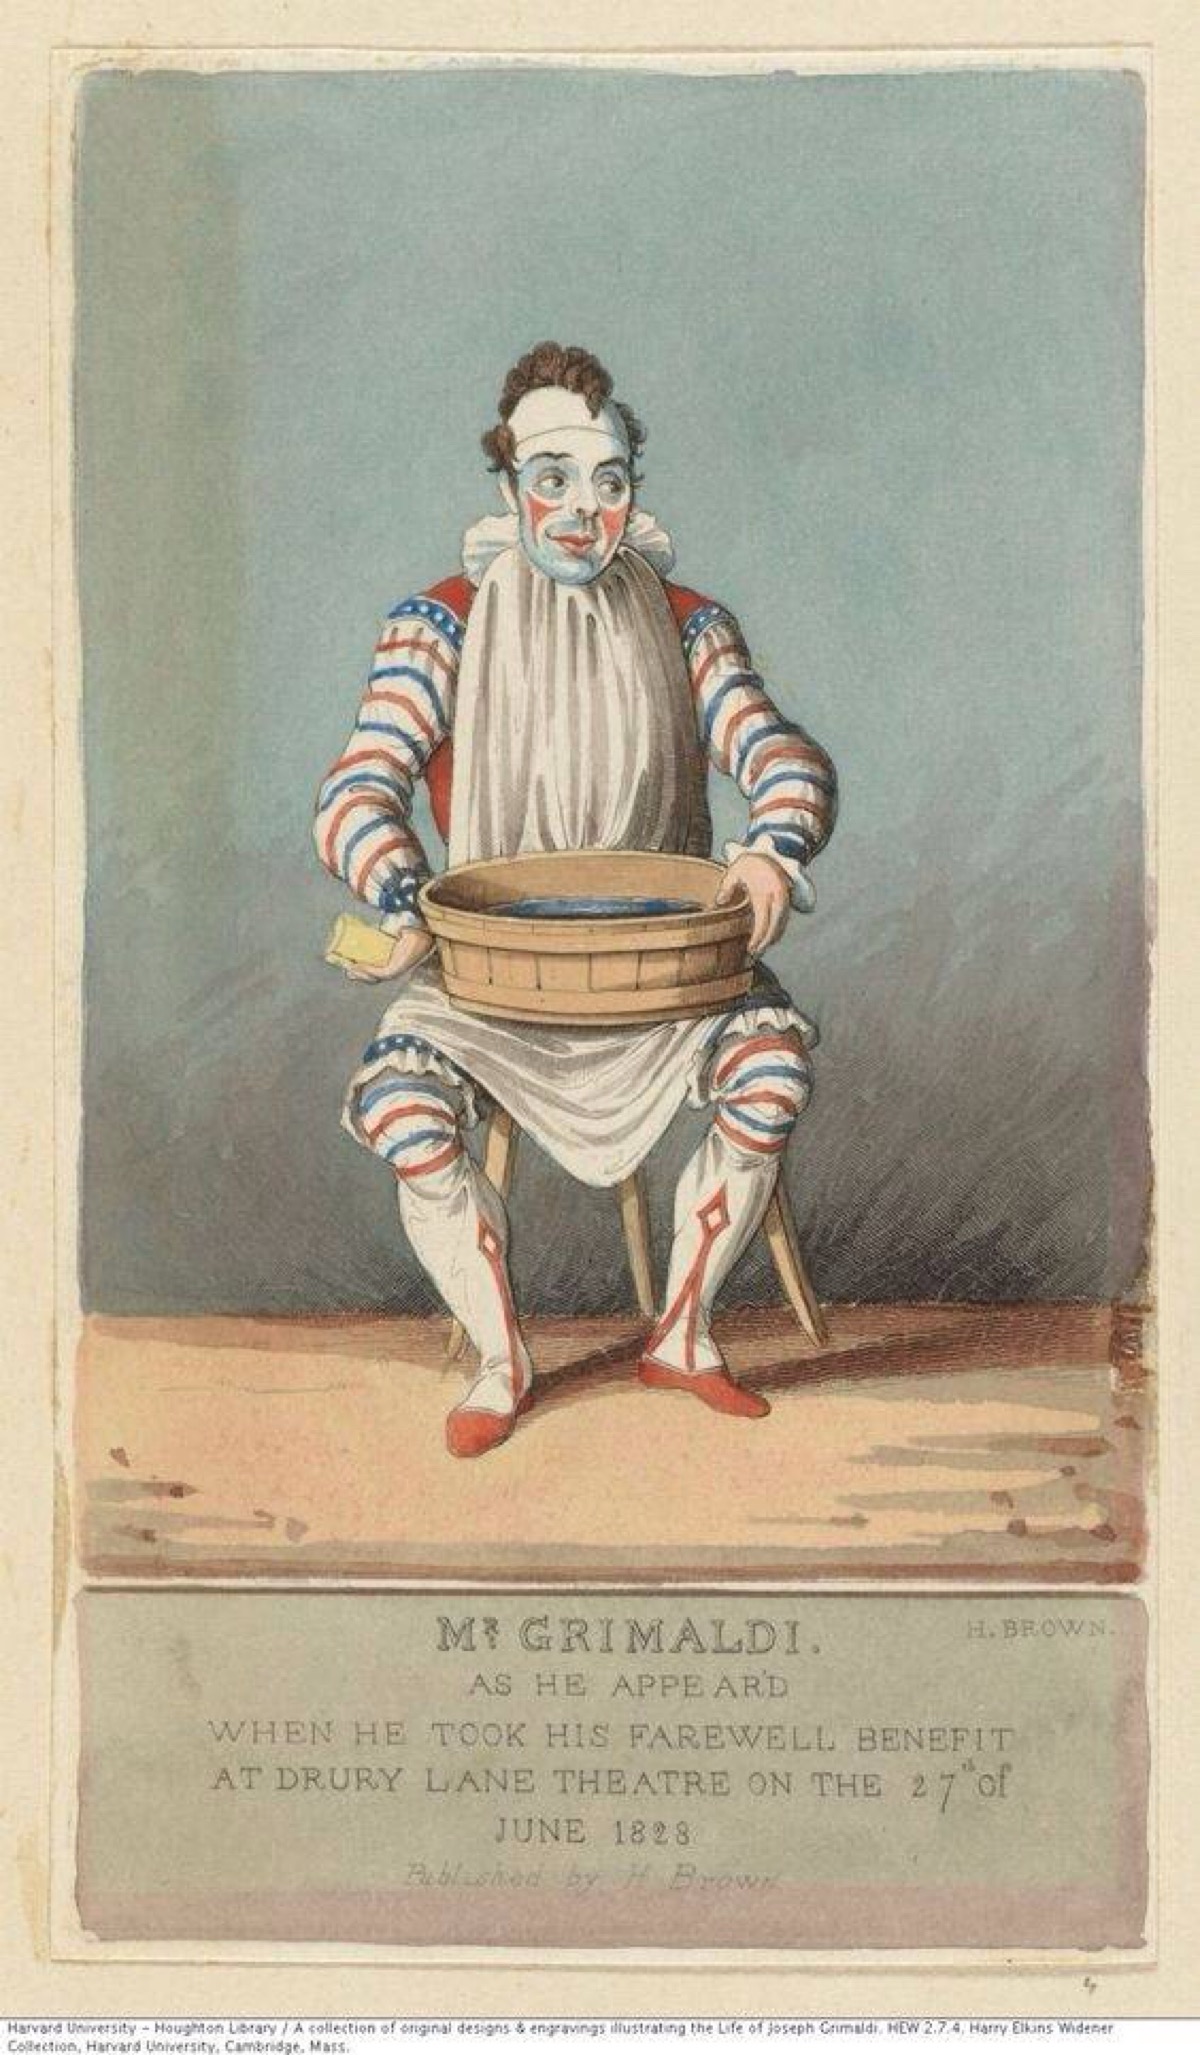 欧洲中世纪小丑文化图片